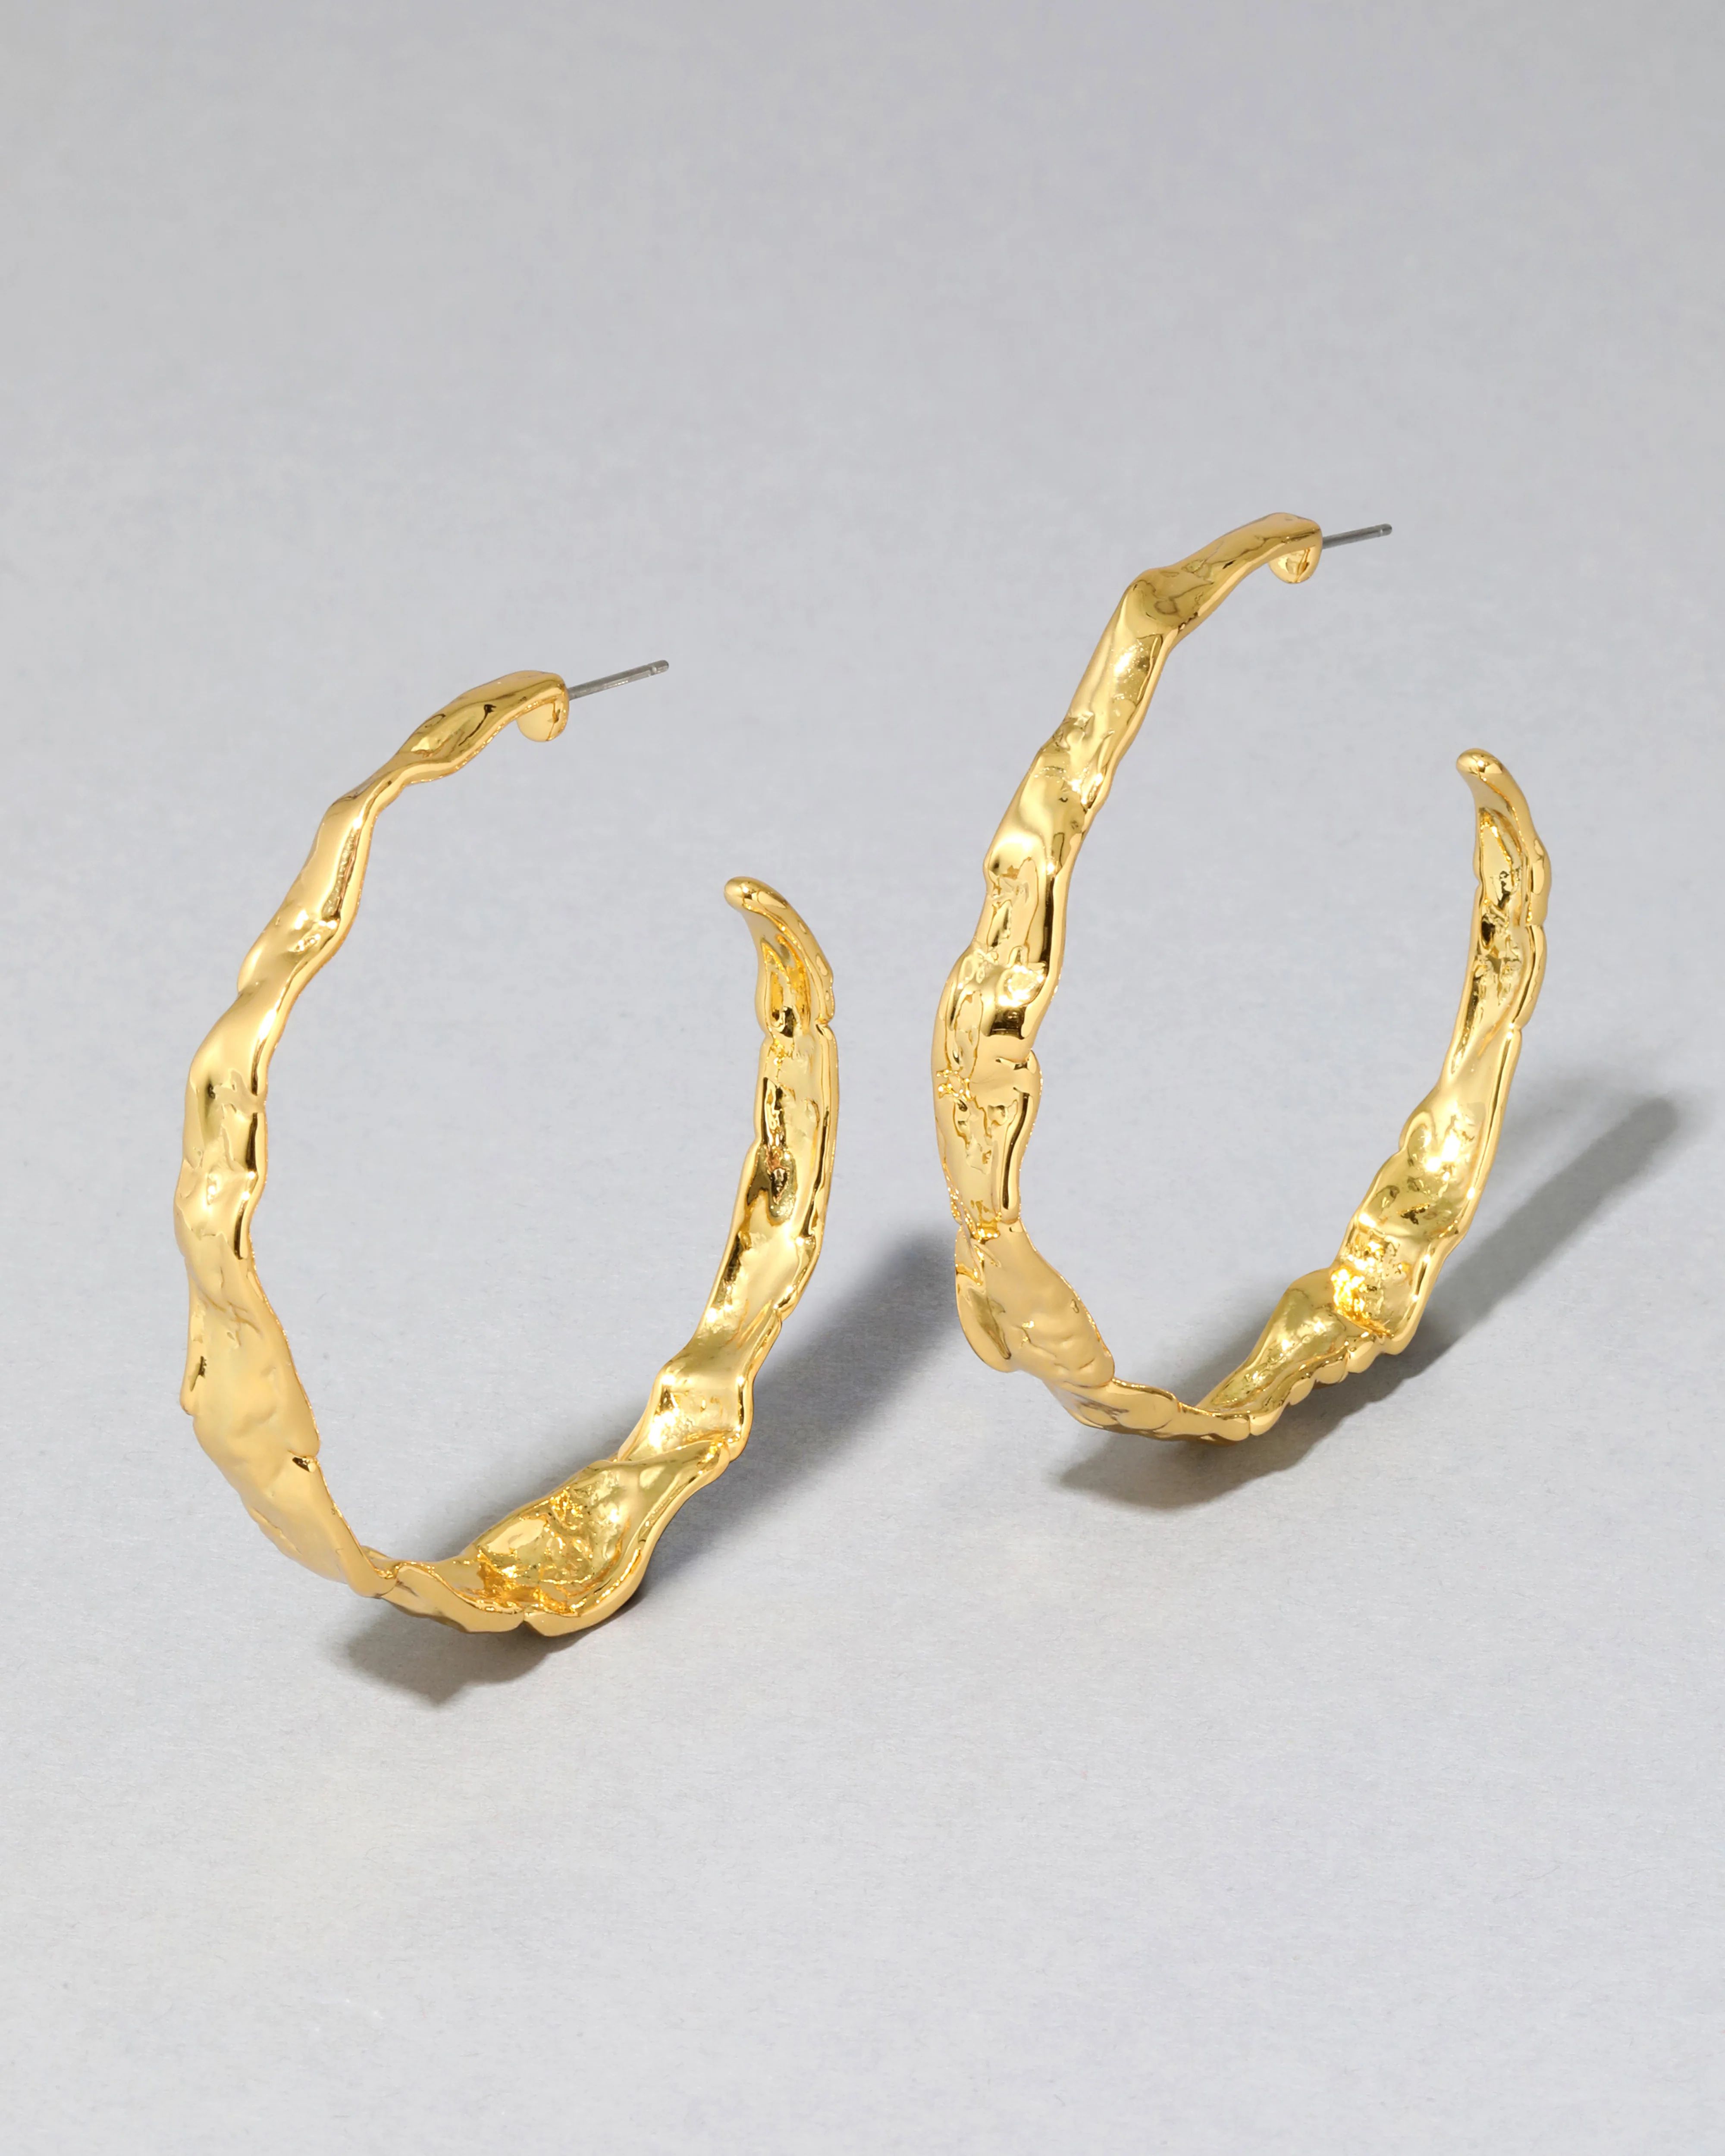 Brut Textured Gold Hoop Earring | Alexis Bittar | Alexis Bittar